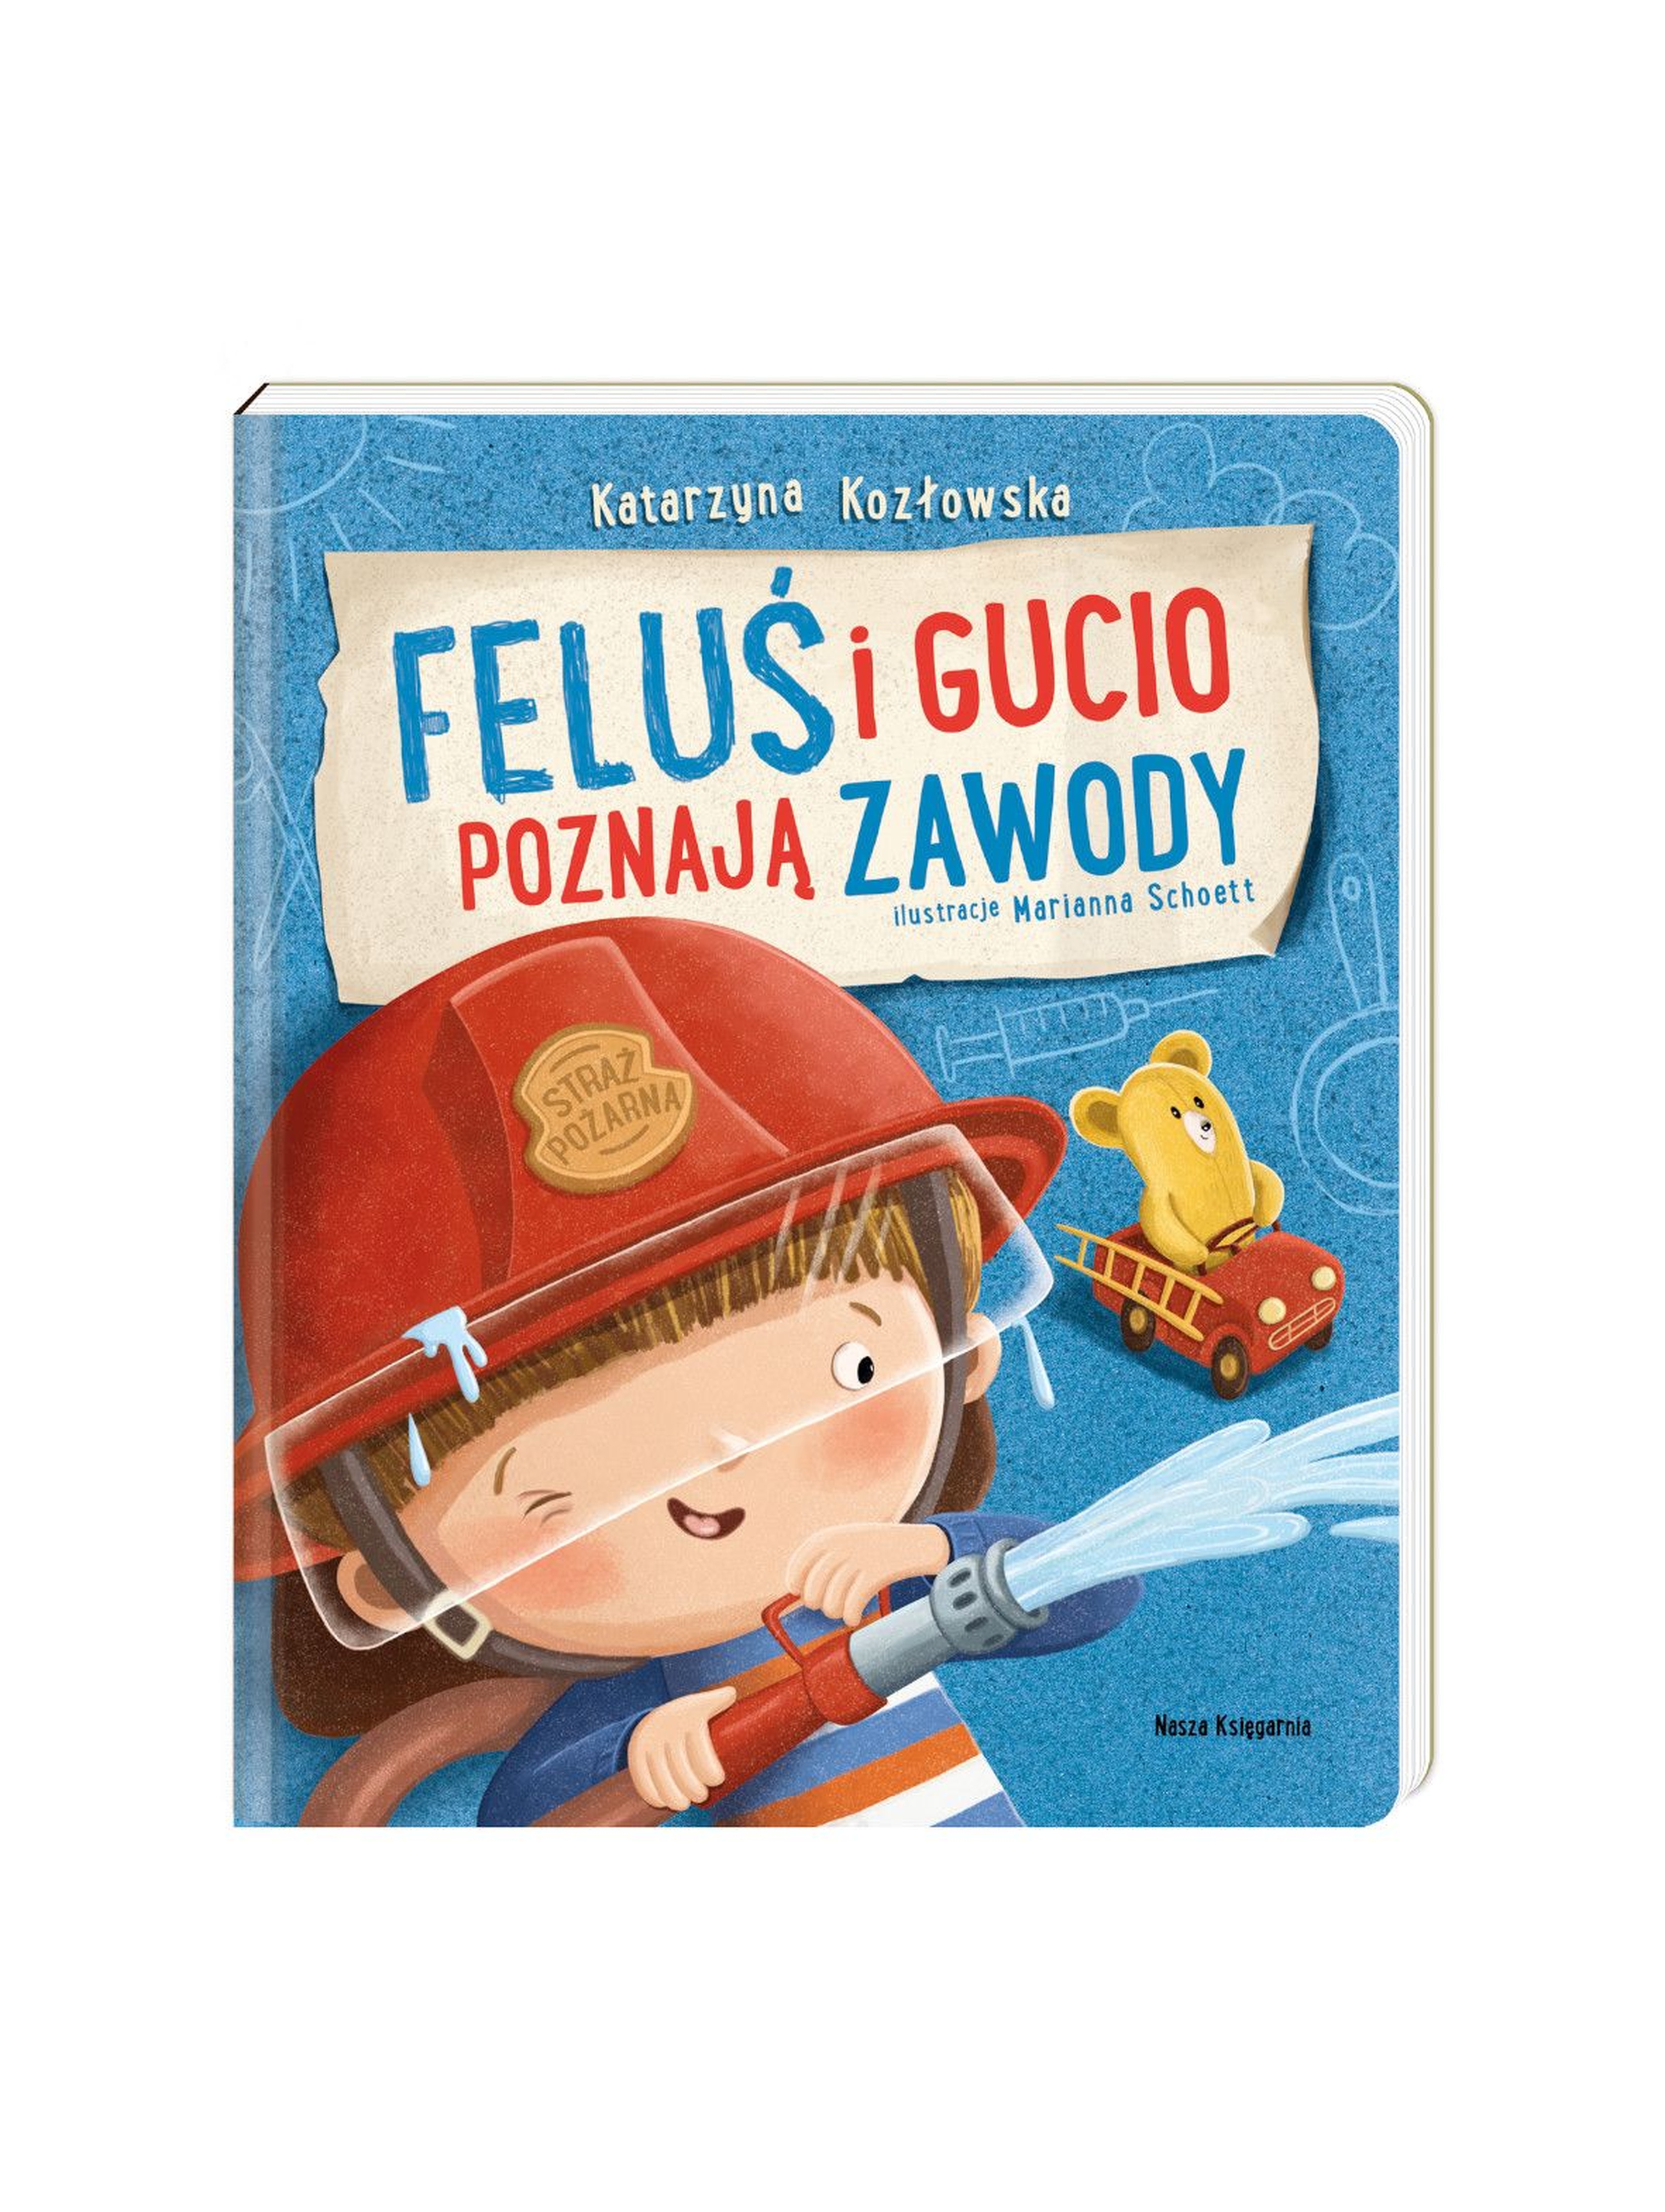 Feluś i Gucio poznają zawody - książka dla dzieci